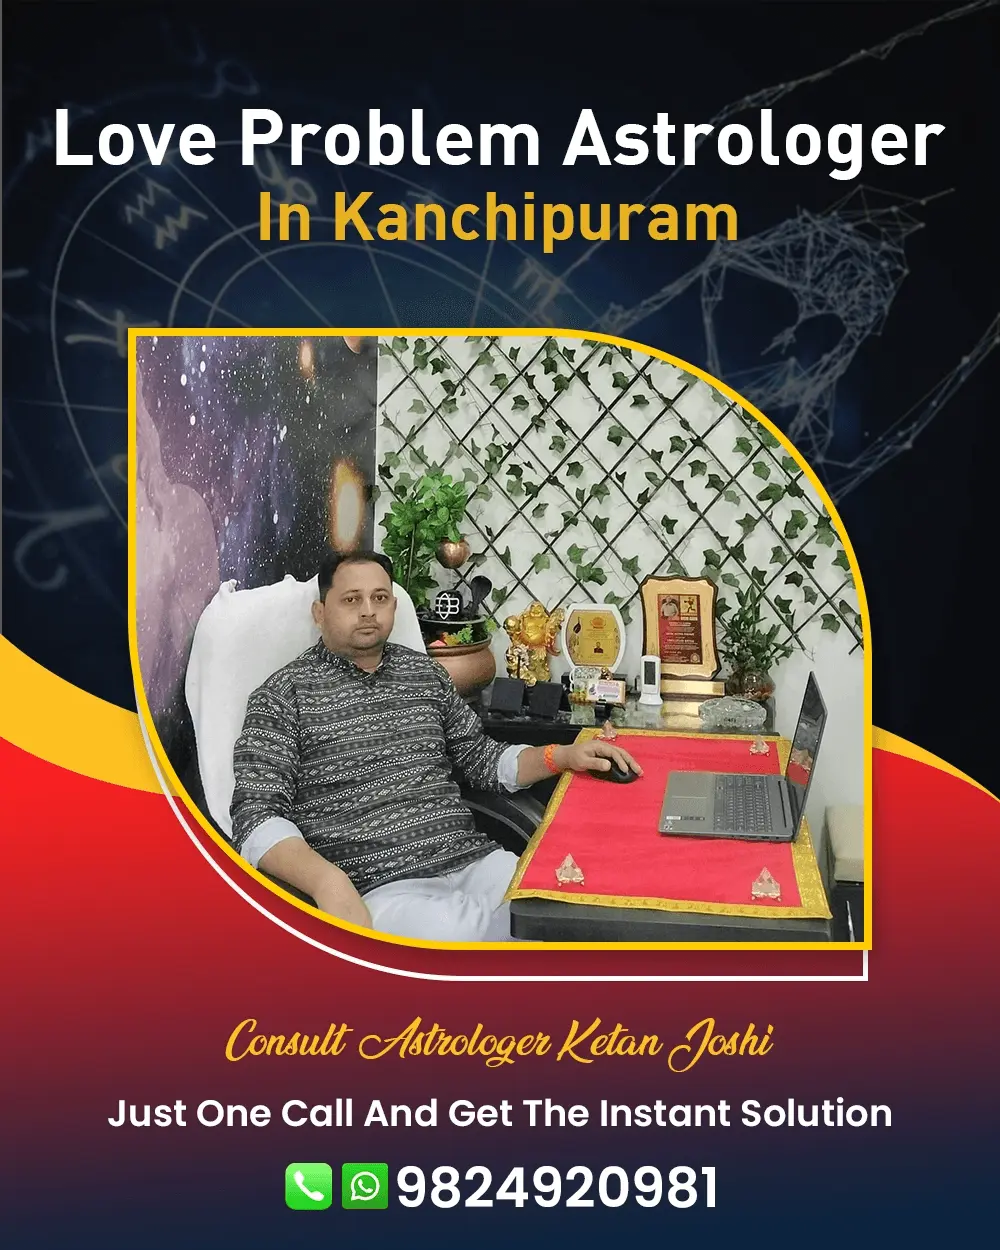 Love Problem Astrologer In Kanchipuram